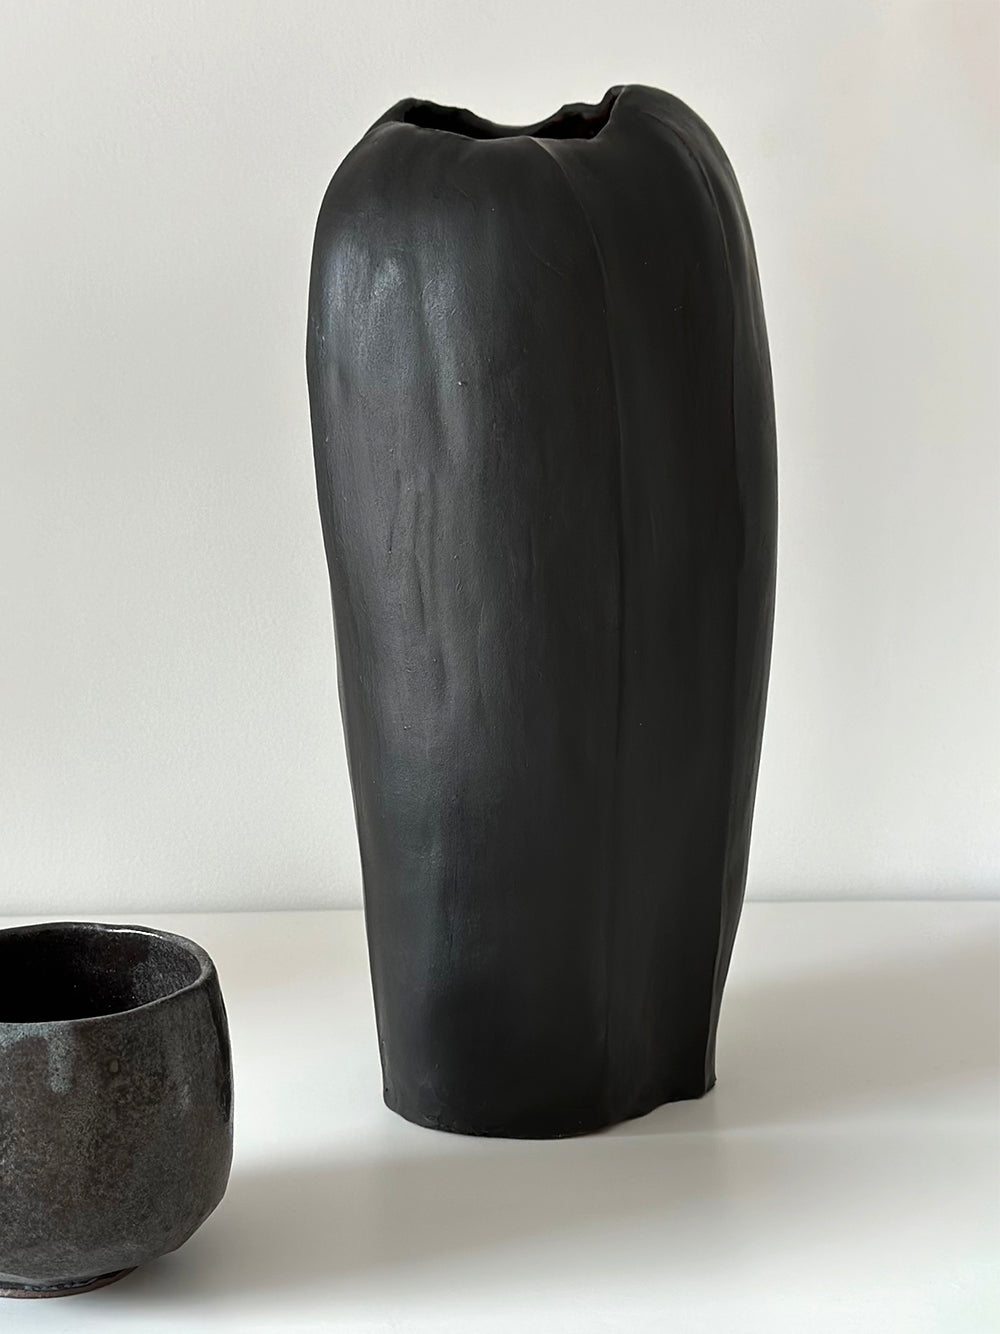 Vase, "No titel", Black